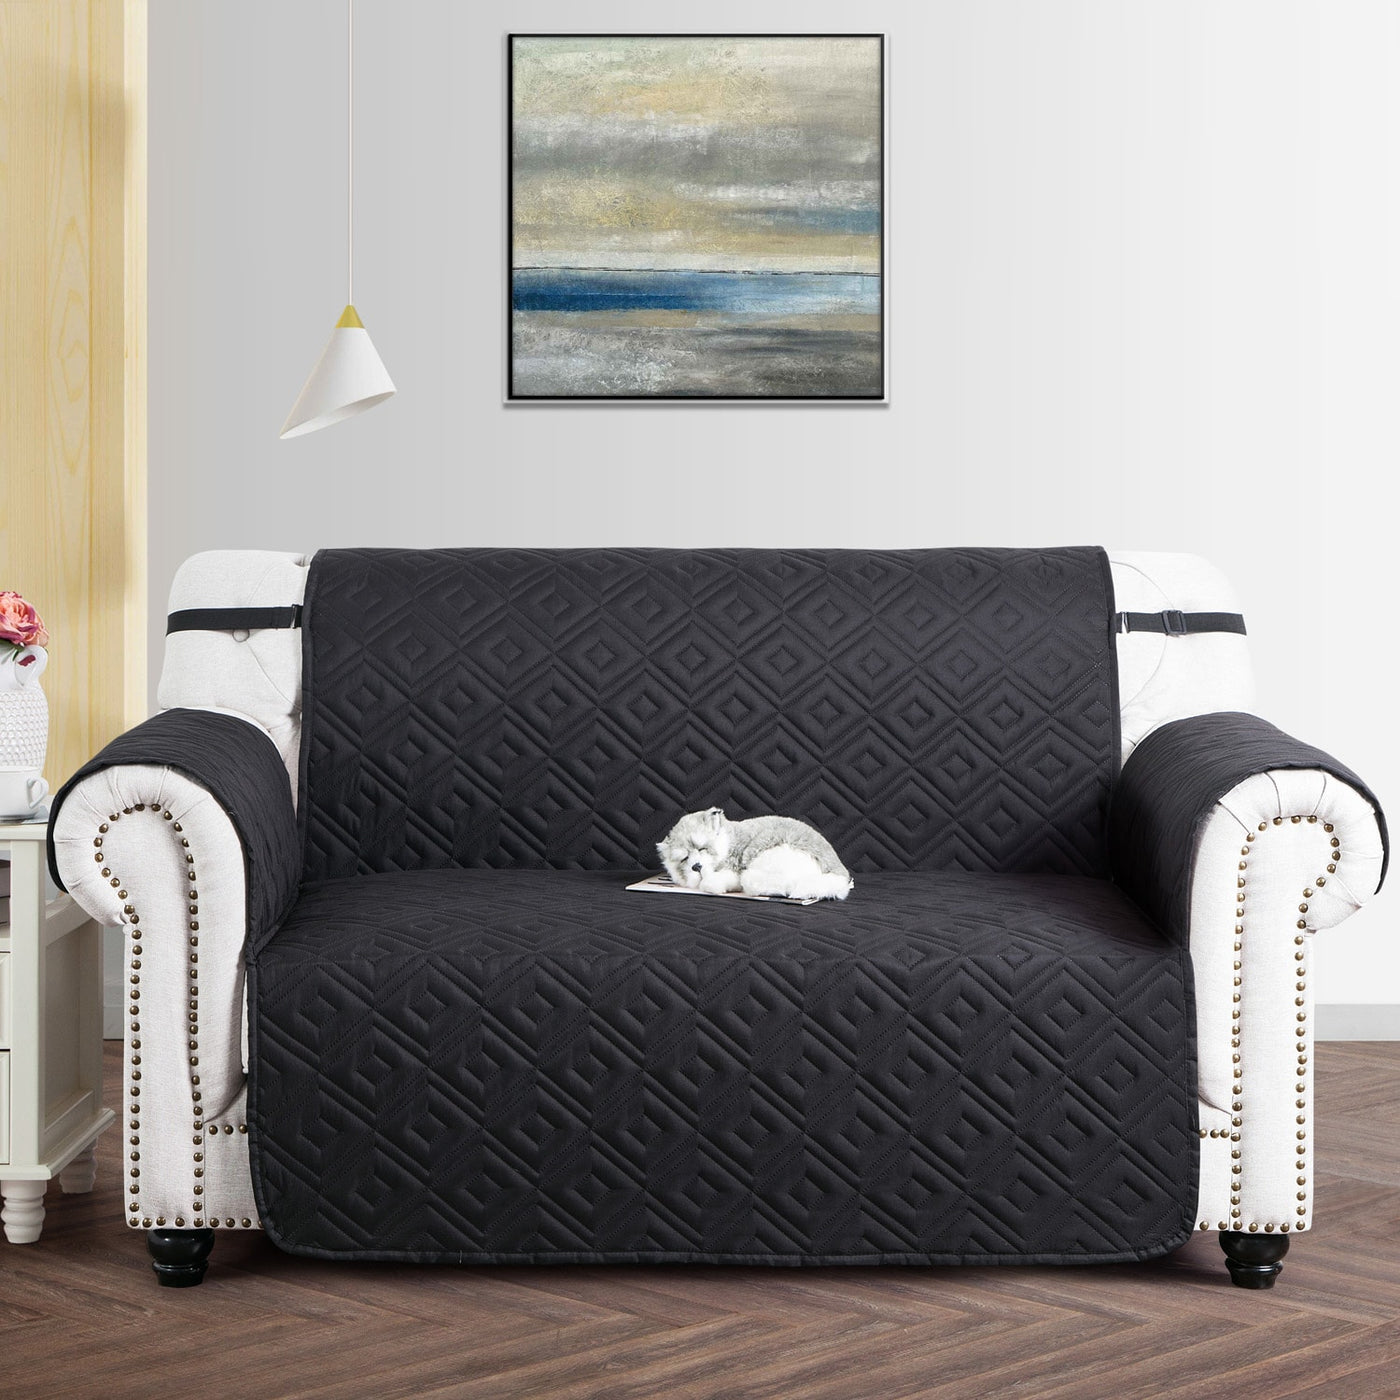 waterproof sofa cover in black